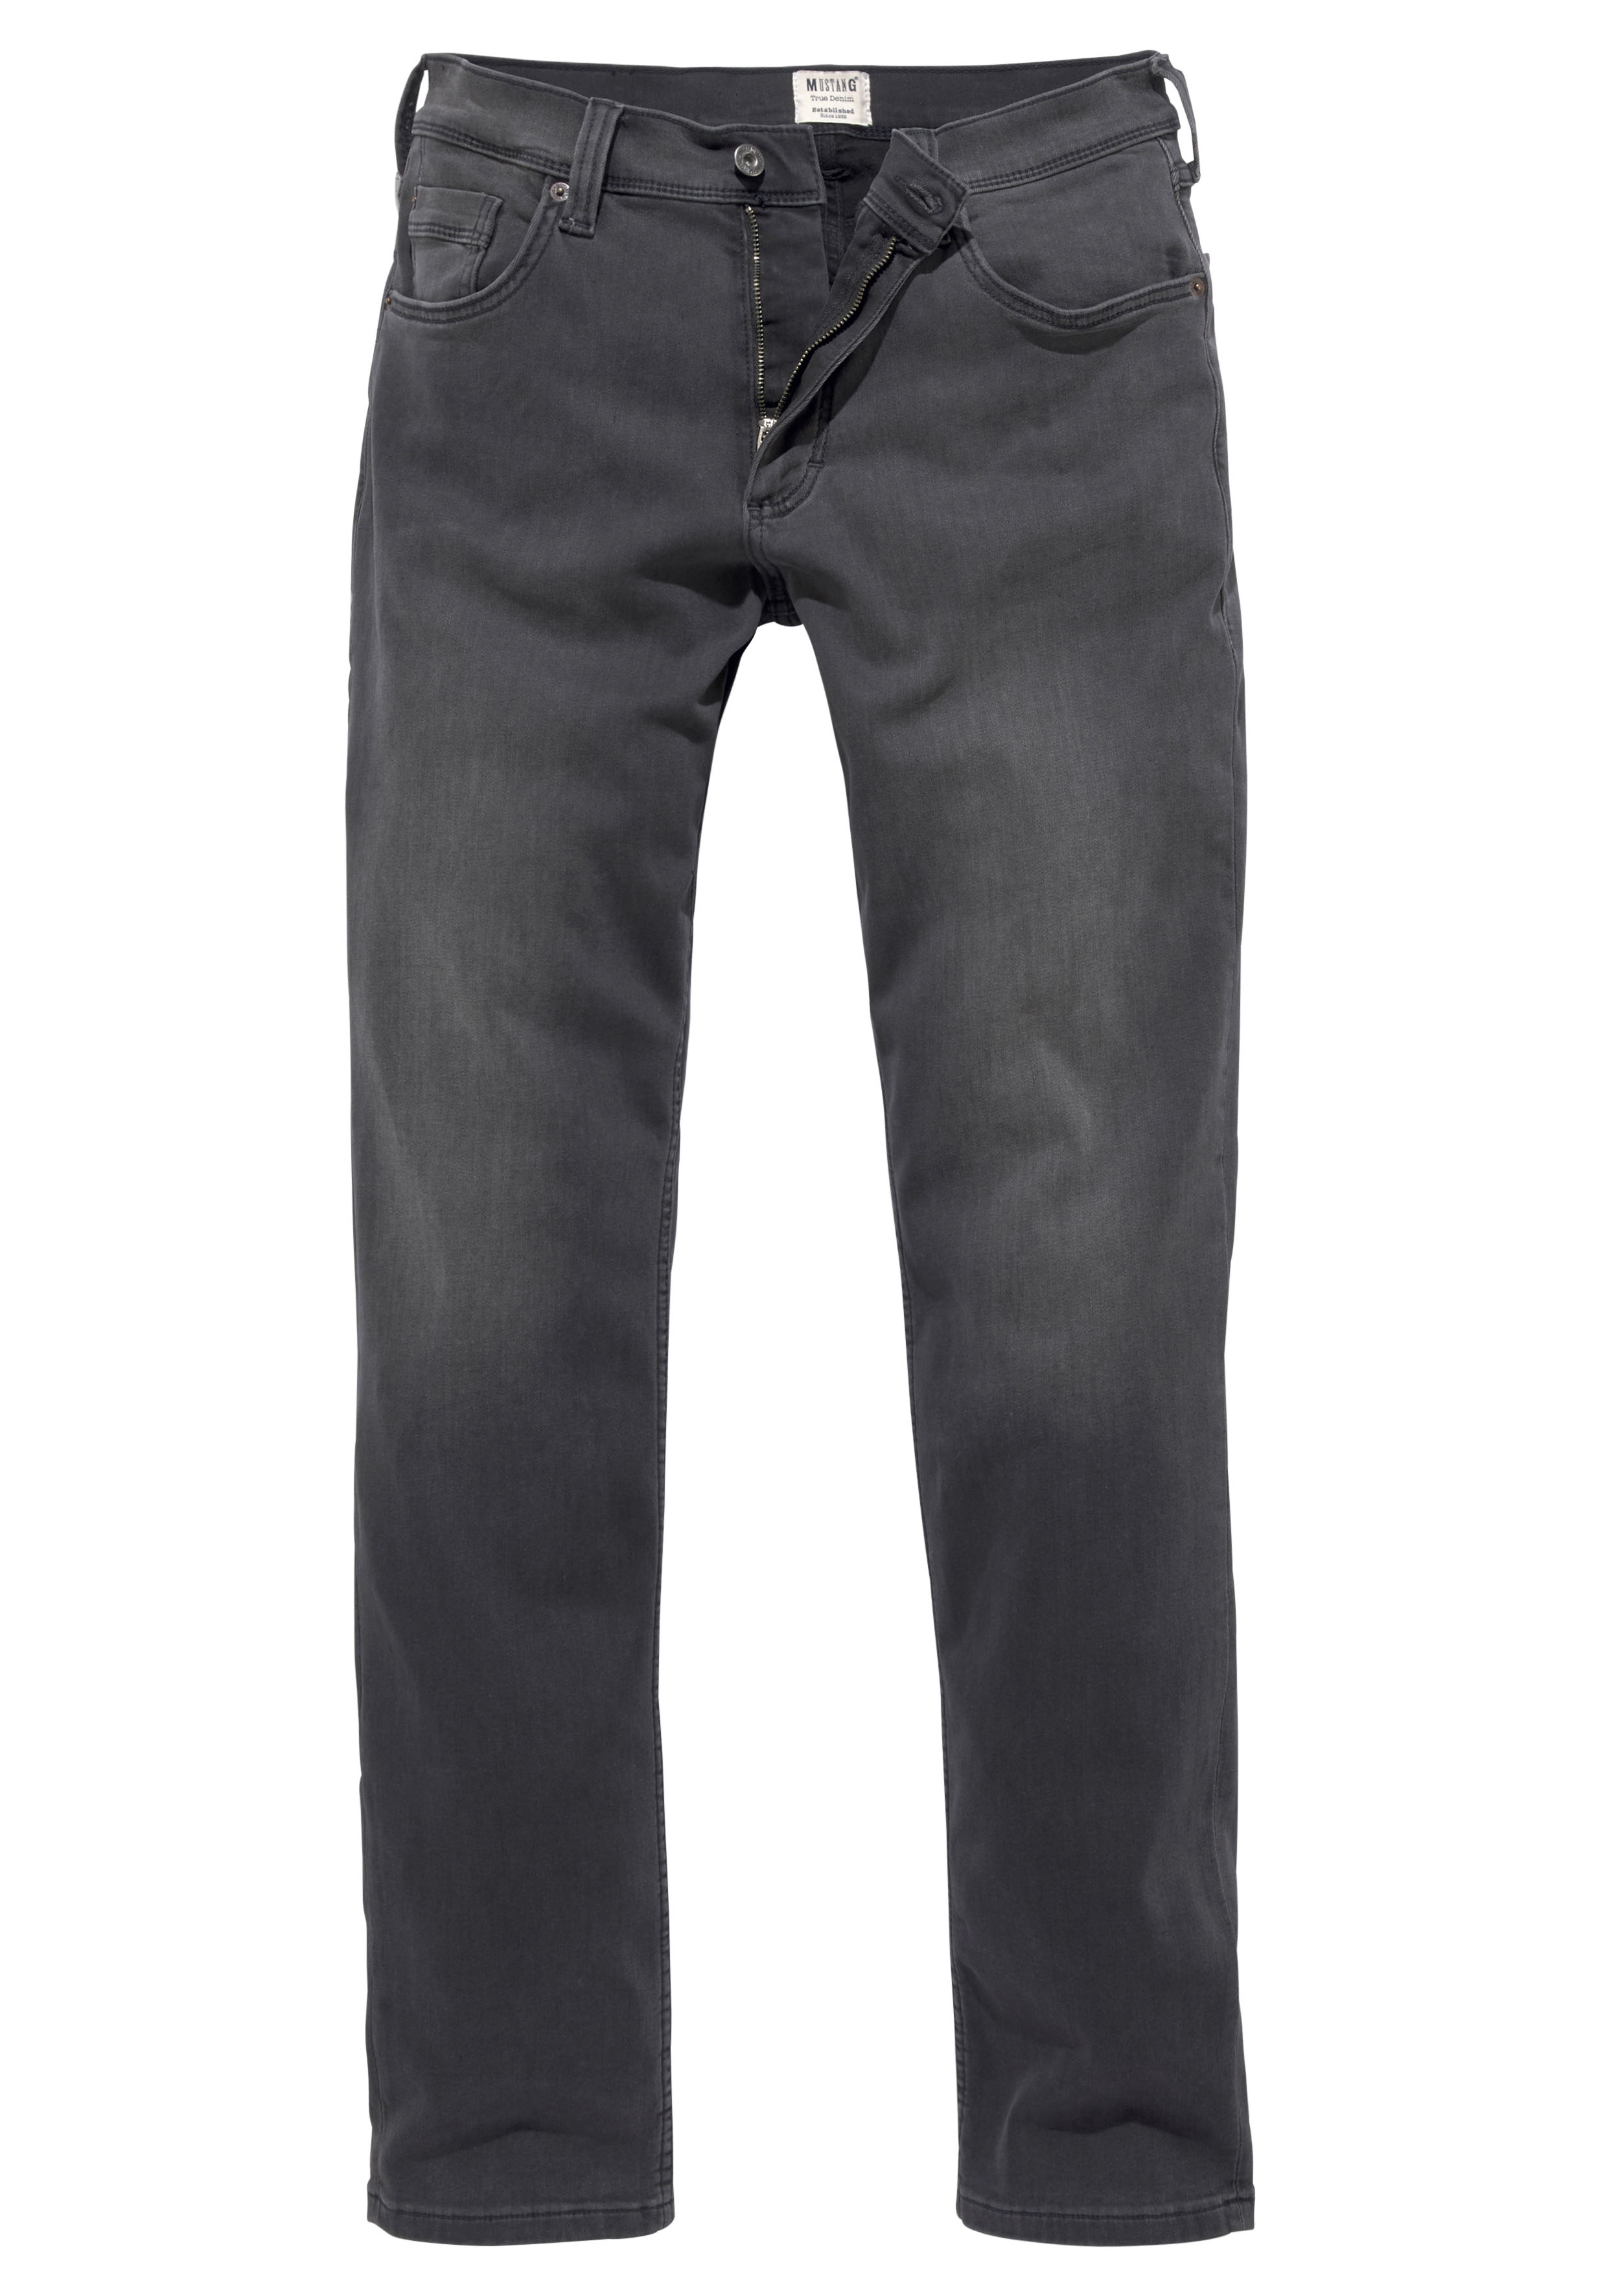 MUSTANG Herren Washington Slim Jeans, Schwarz (Dunkelgrau 780), W34/L30 (Herstellergröße: 34)